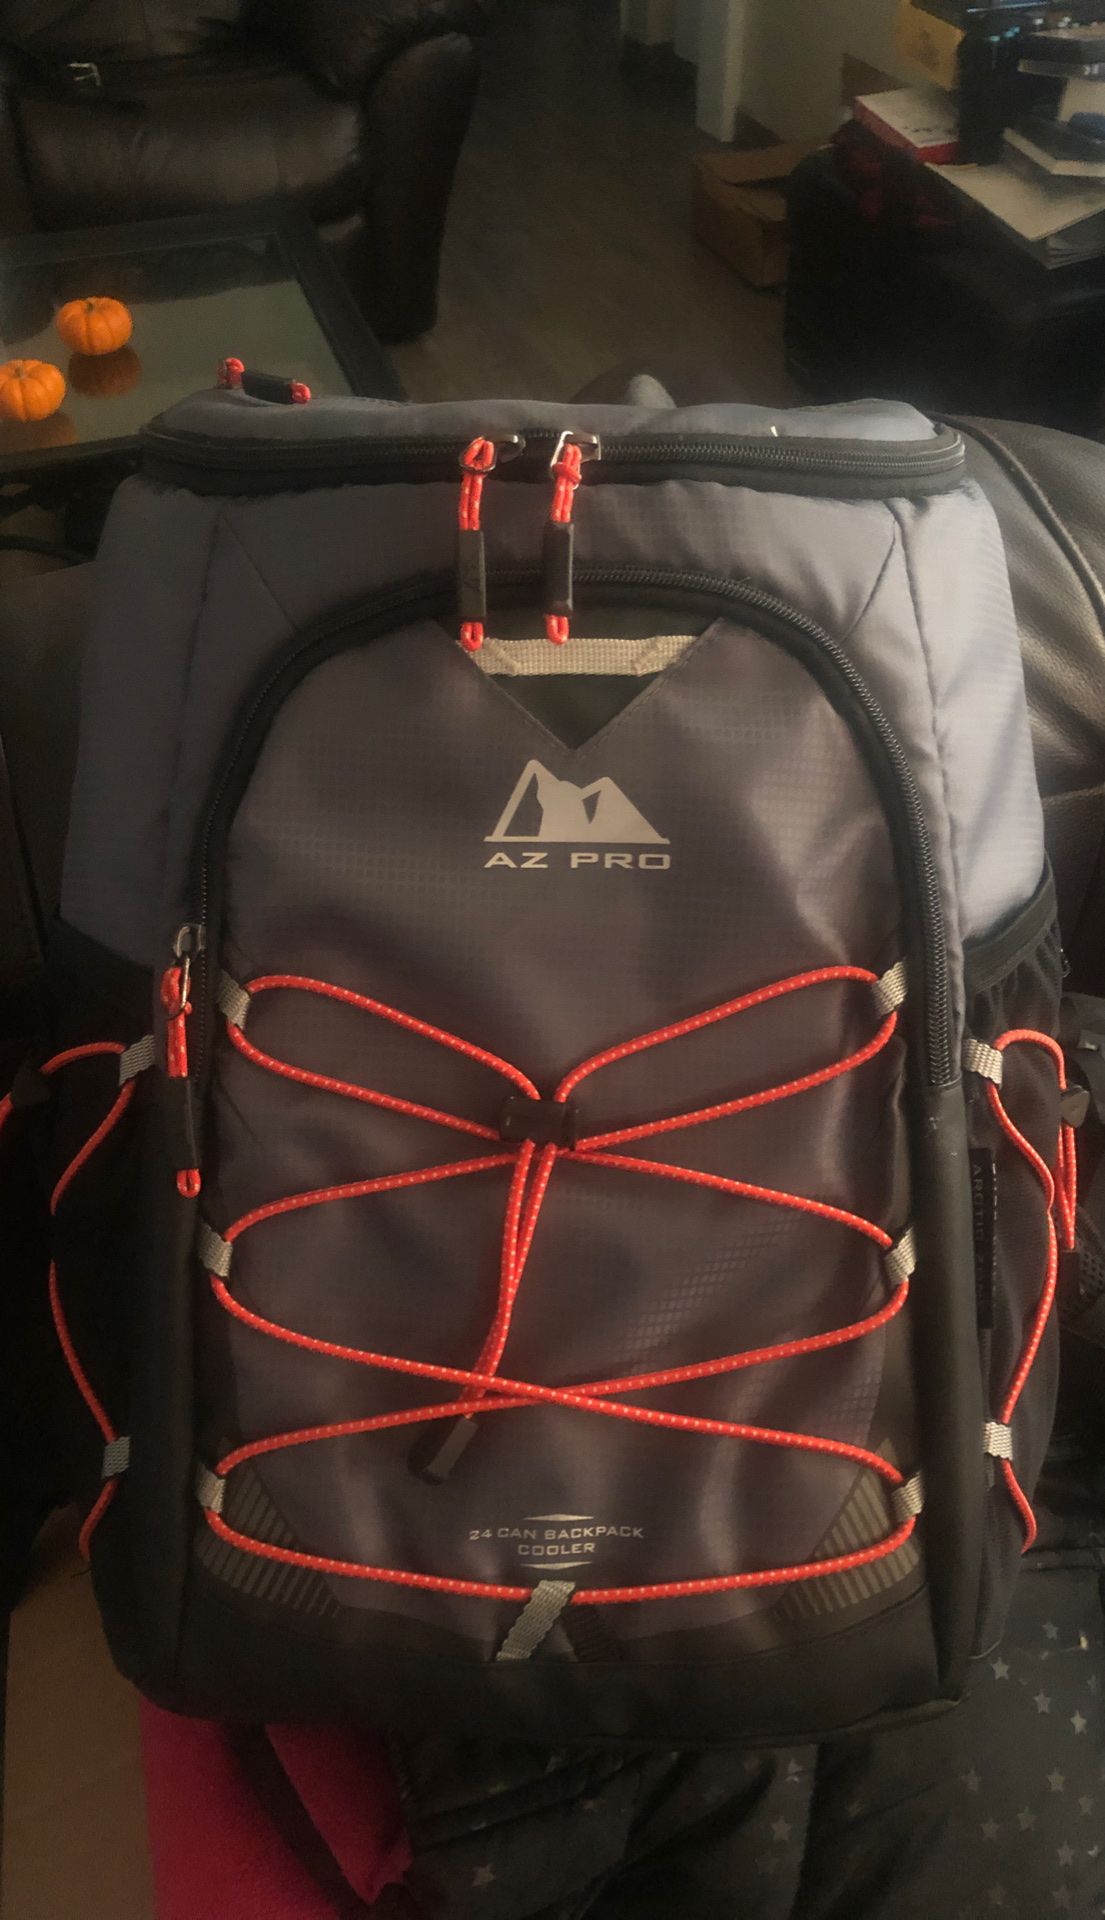 AZ PRO Back Pack cooler $10